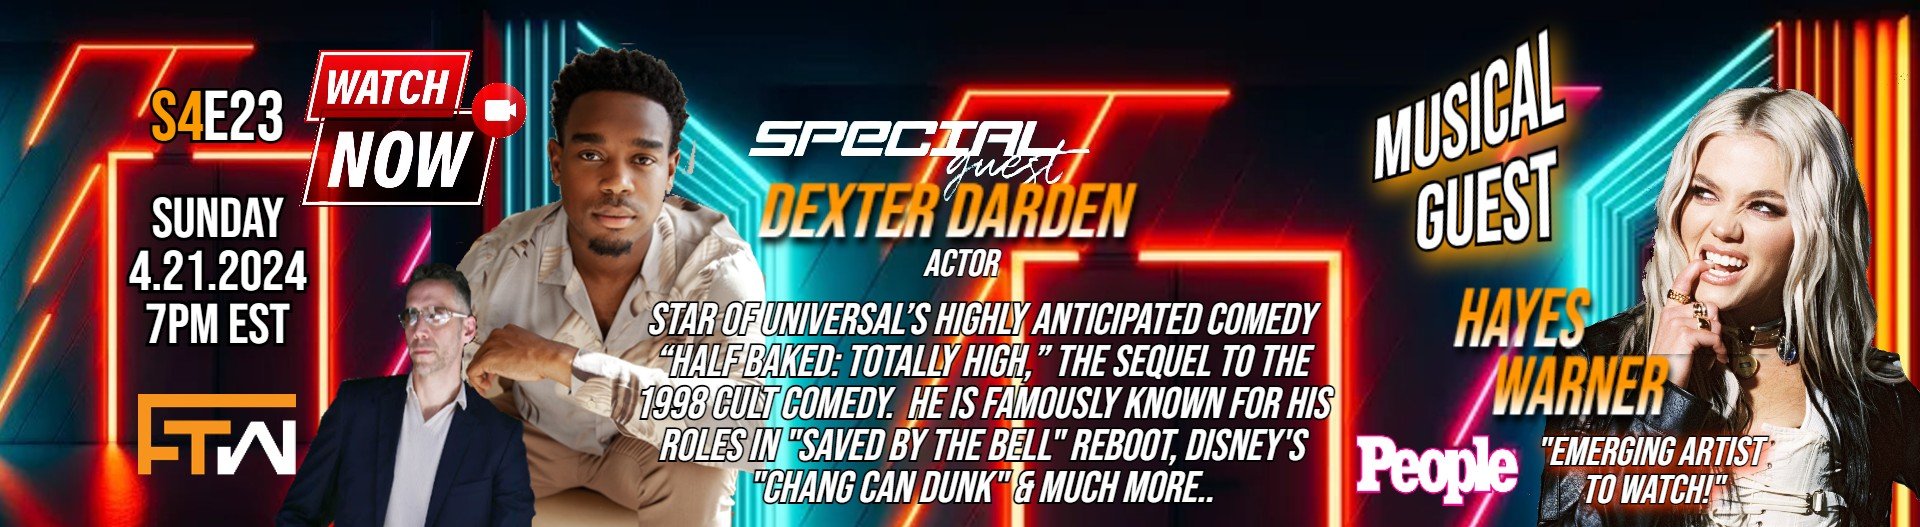 Dexter Darden Website Banner Graphic 2.jpg